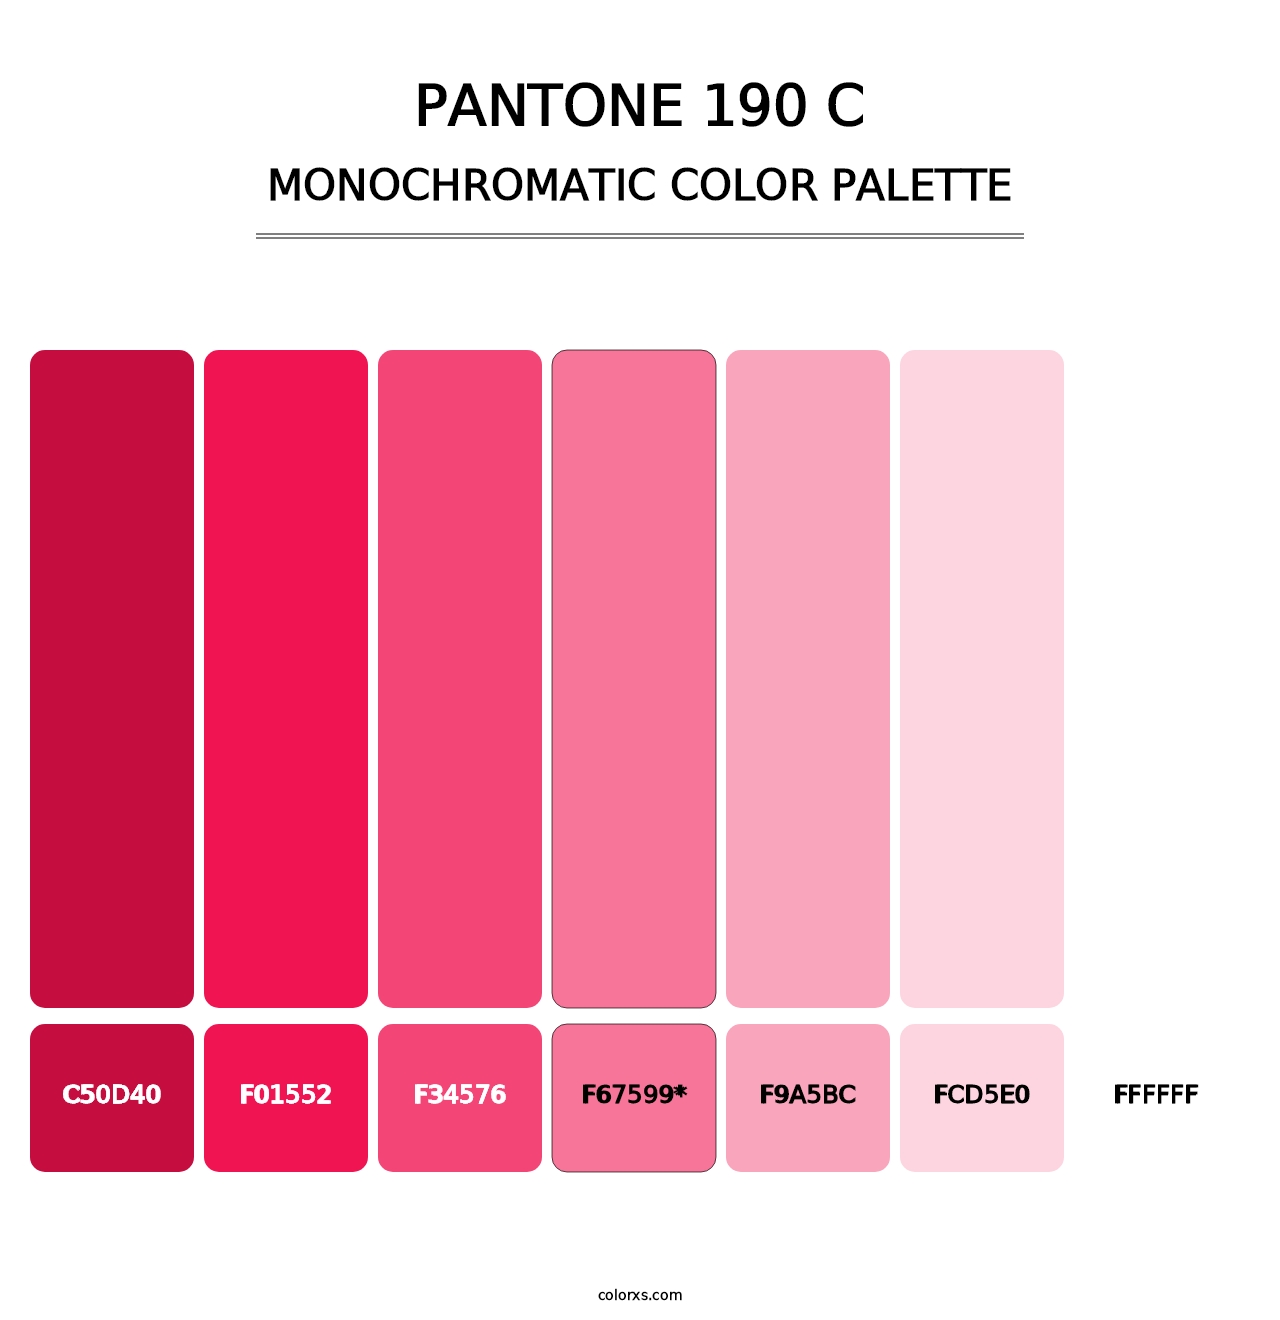 PANTONE 190 C - Monochromatic Color Palette